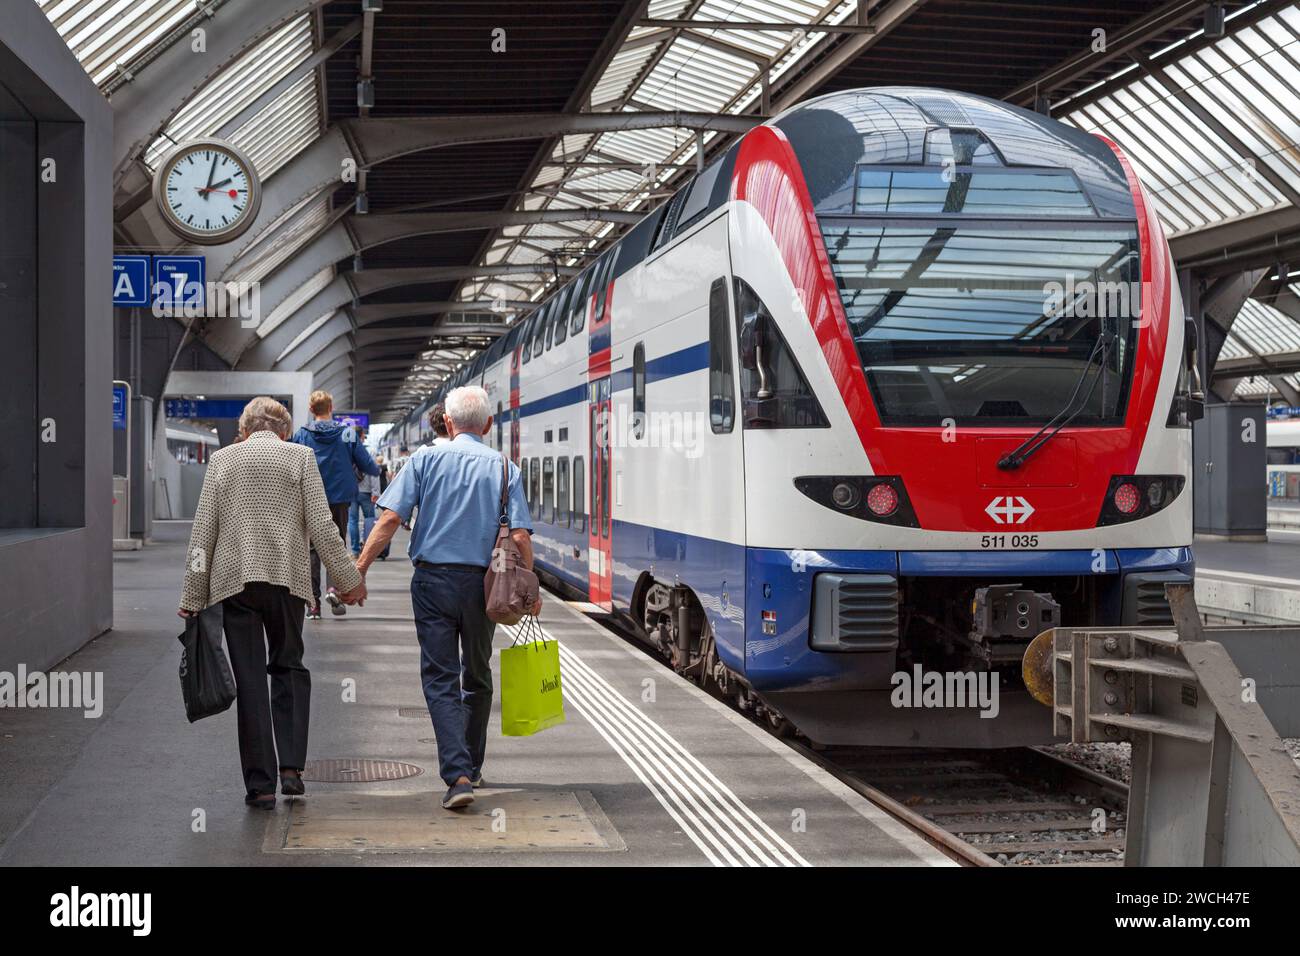 Zurigo, Svizzera - 13 giugno 2018: Il treno Stadler KISS gestito dalle Ferrovie federali svizzere nella stazione ferroviaria di Zürich HB. Foto Stock